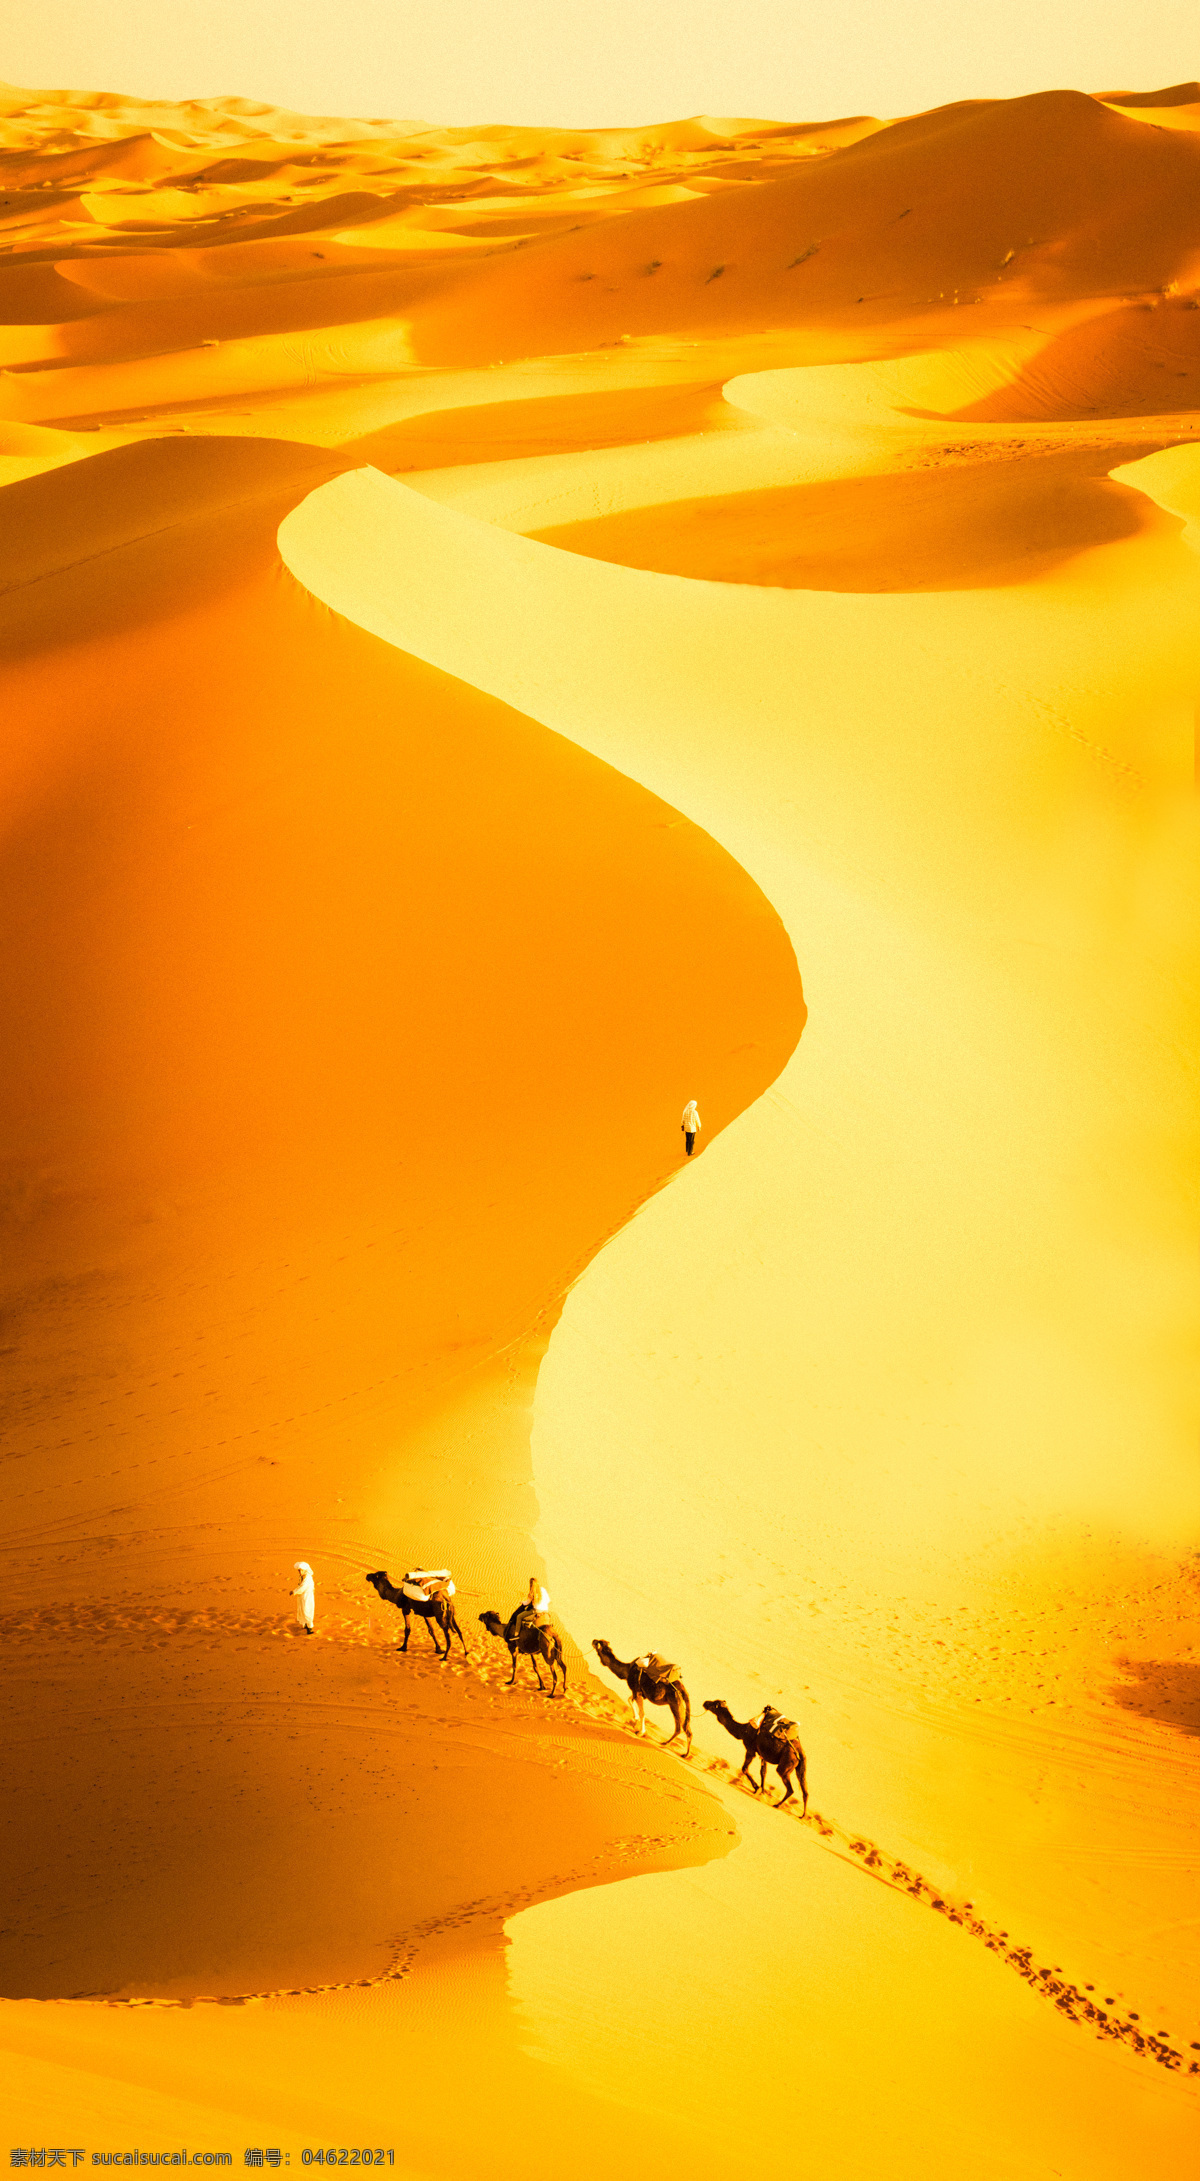 金色沙漠 沙丘 沙漠探险 骆驼队 穿越沙漠 驼影 荒野求生 沙漠曲线 沙山 沙子 沙坡 沙滩 波纹 纹路 自然 唯美 纯净 空灵 丝绸之路 驼铃 商队 沙漠之路 自然景观 自然风景